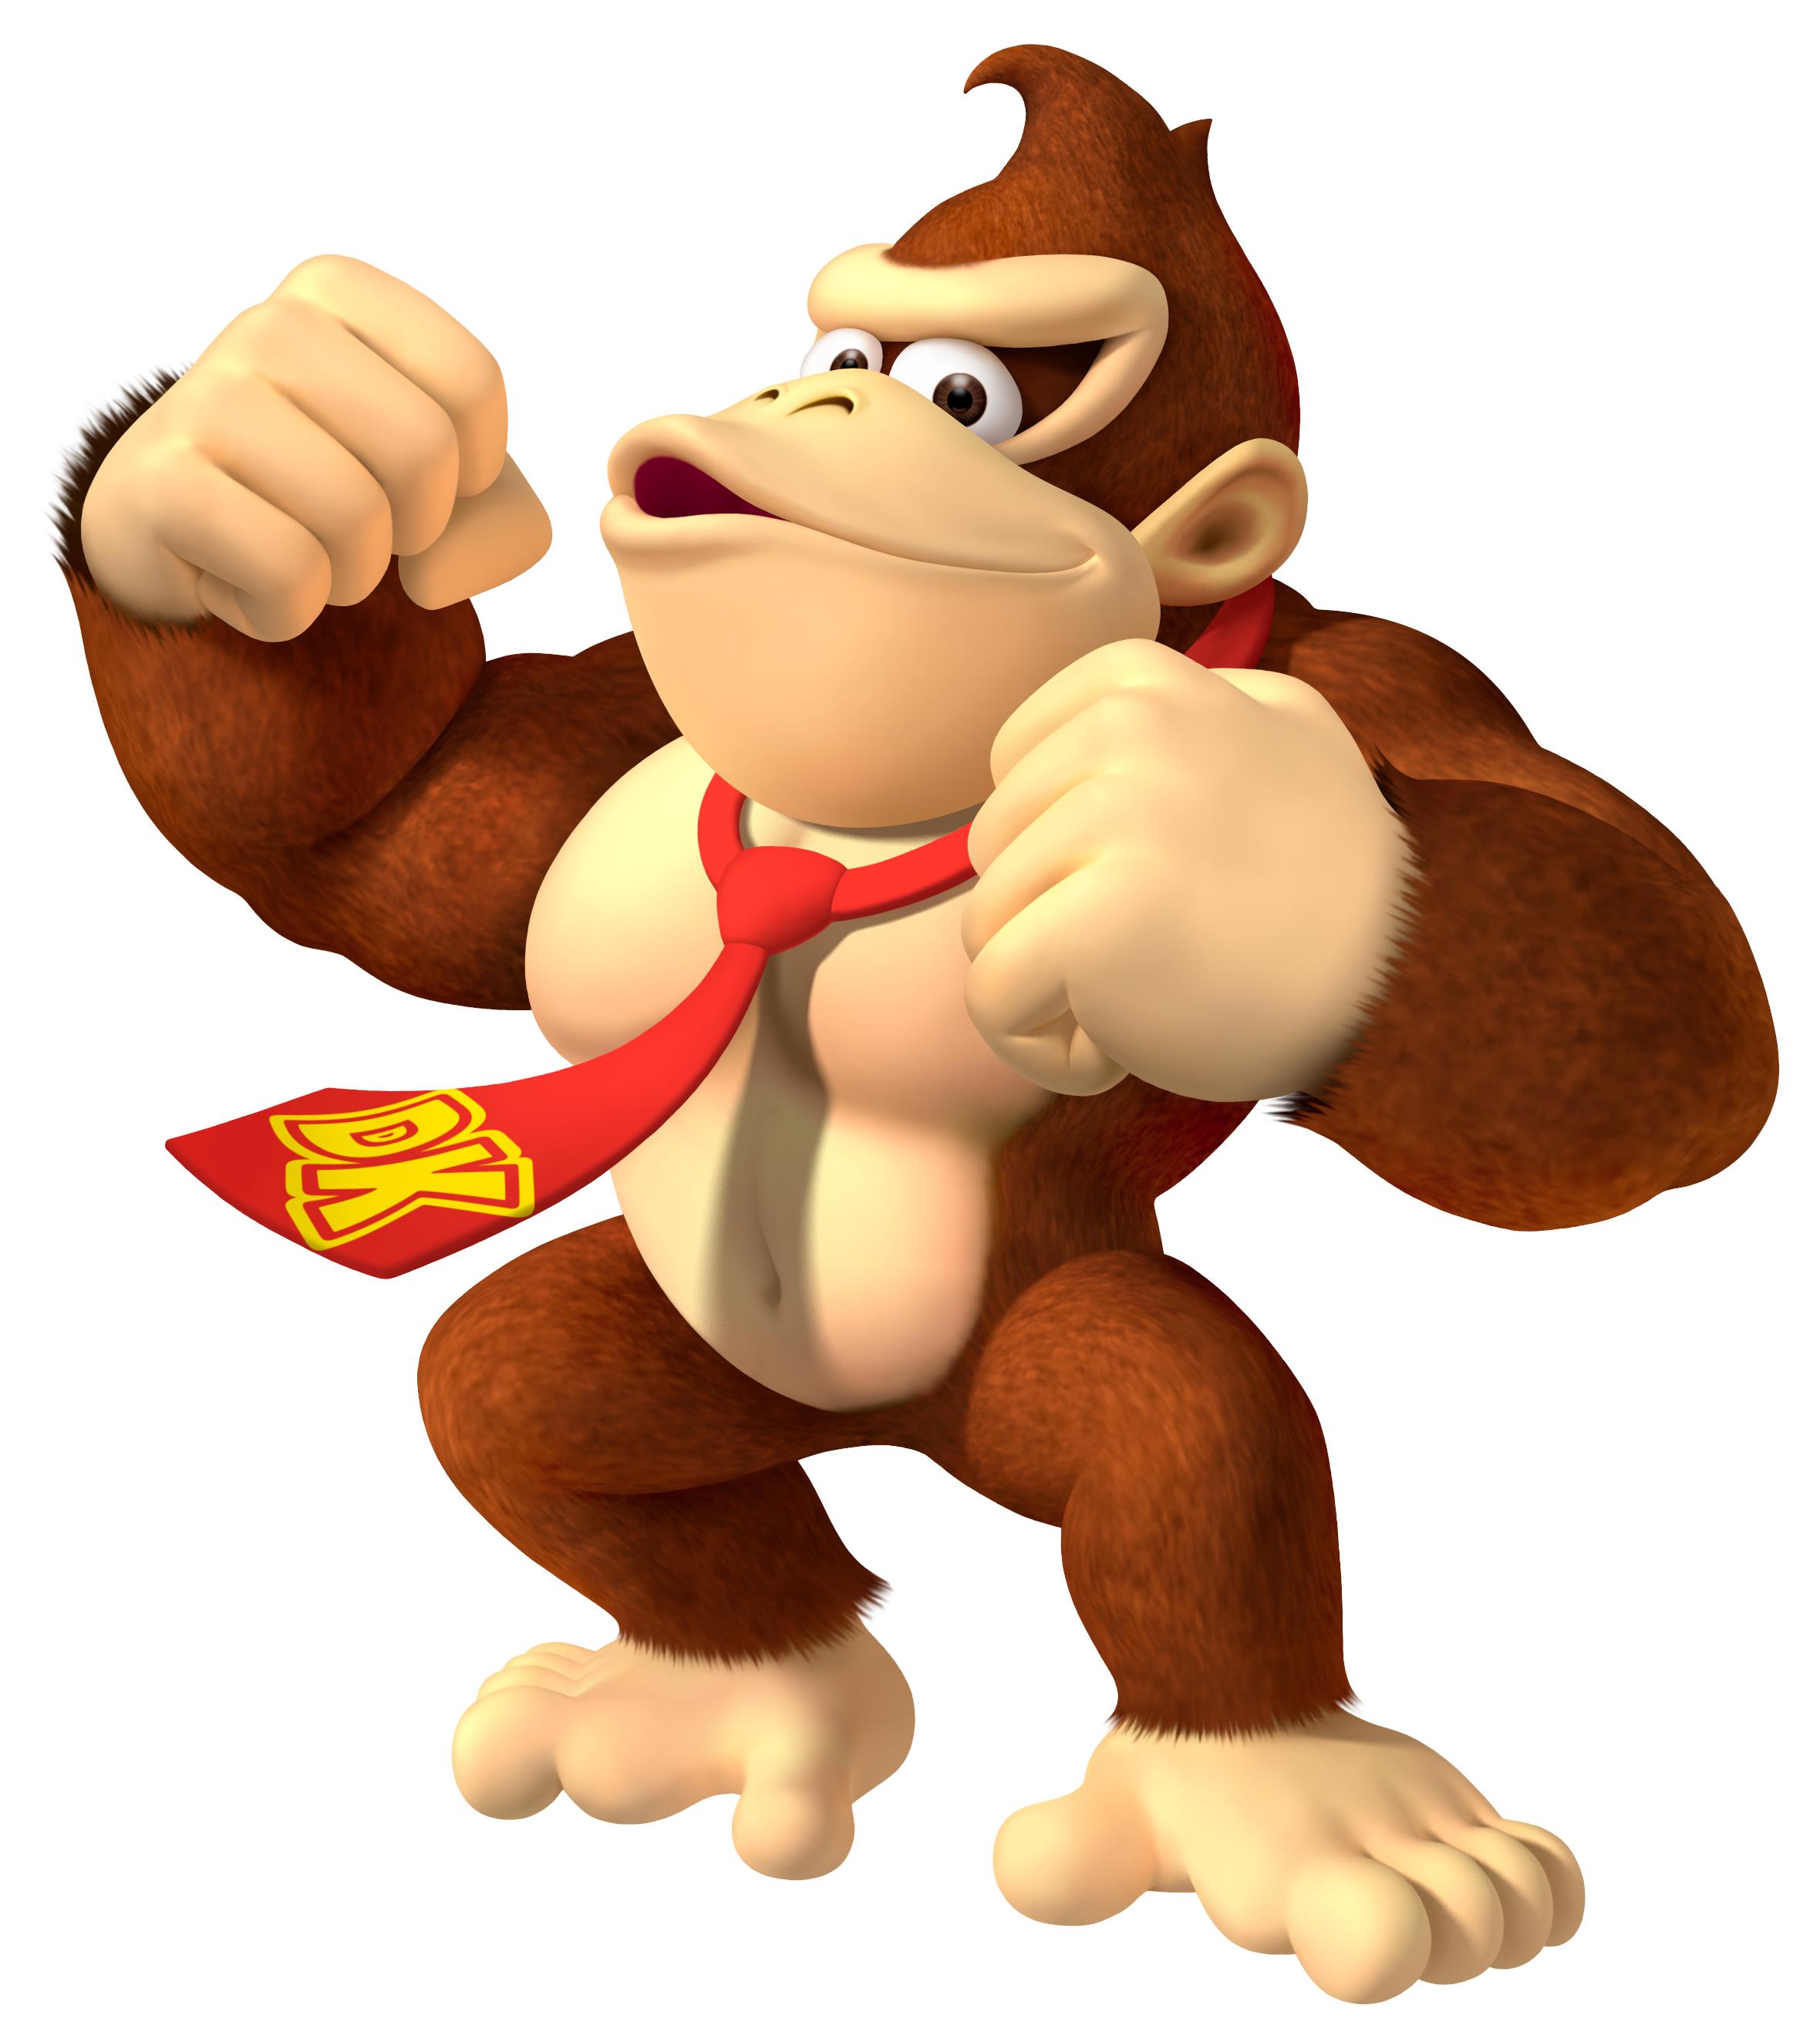 Donkey Kong, o primeiro personagem da Nintendo